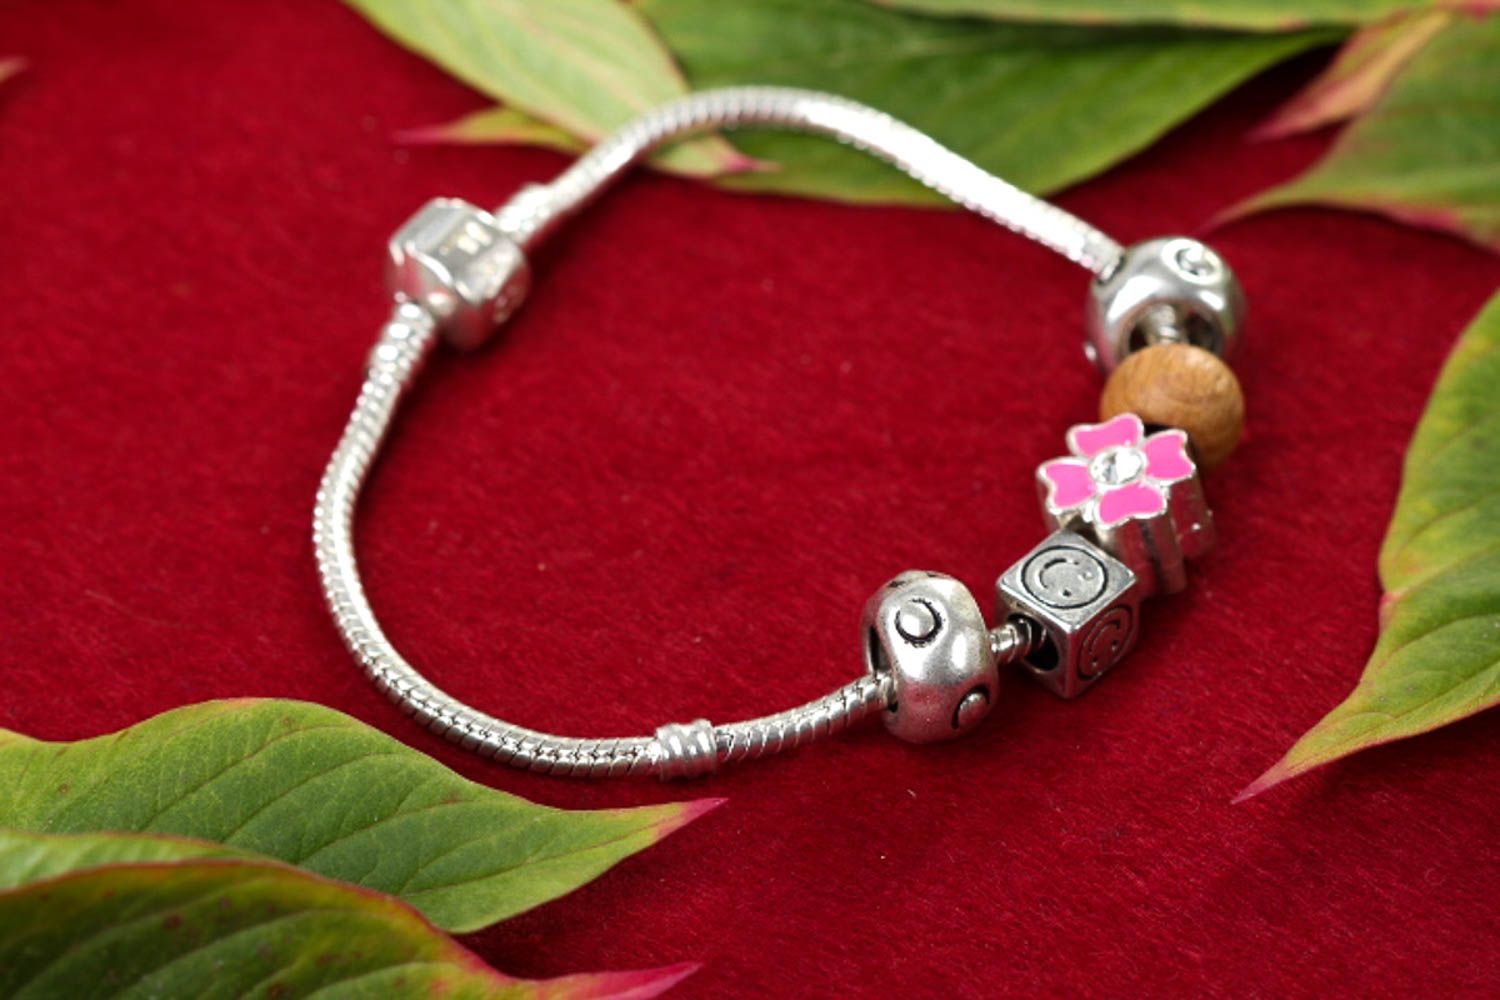 Charm bracelet handmade jewellery wrist bracelet for women gifts for girls photo 1